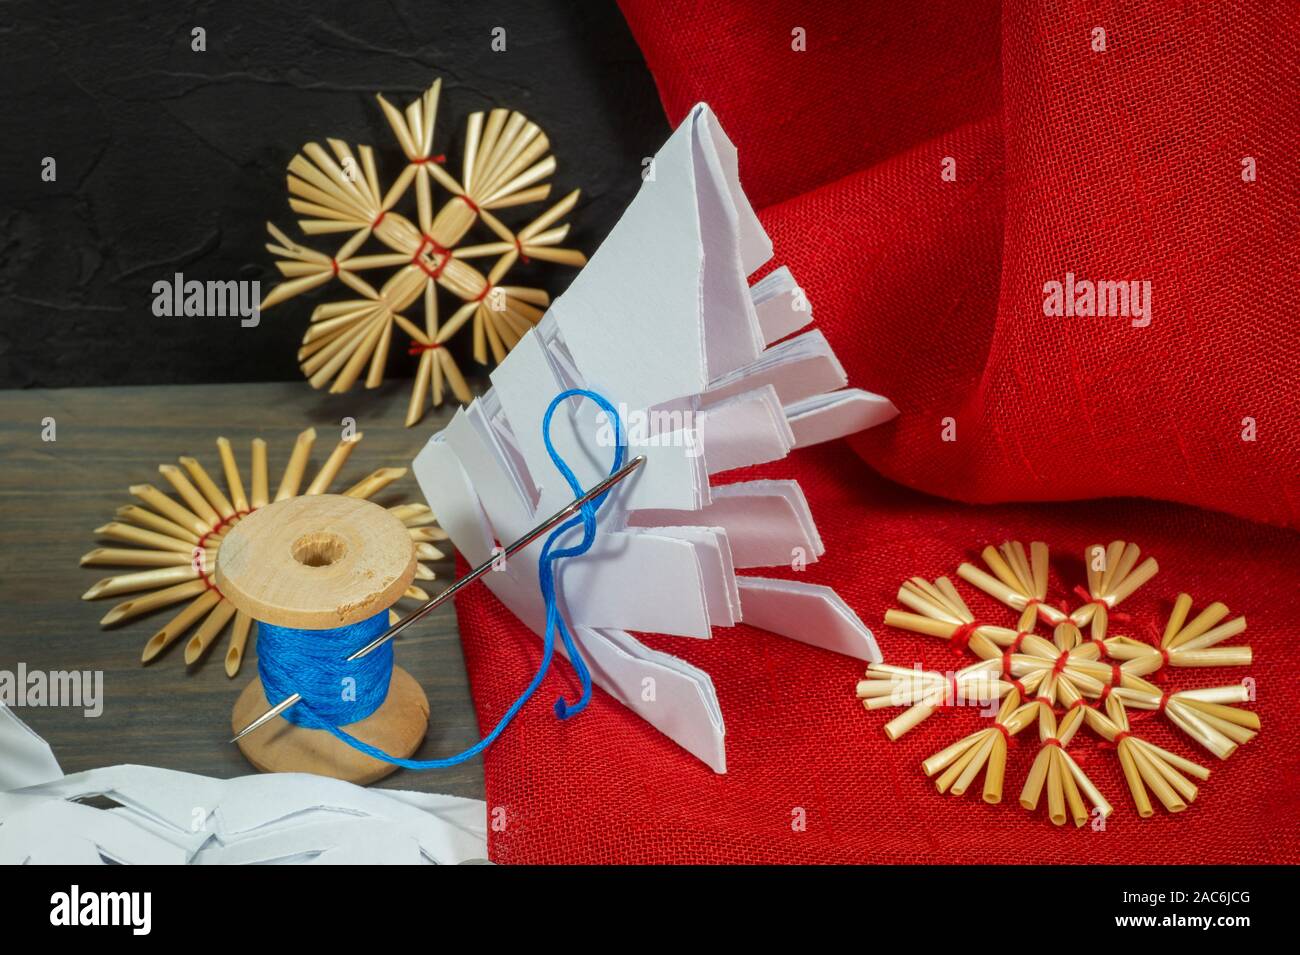 Fond Noël fête avec des décorations de Noël à partir de paille, de bonneterie chaîne et aux côtés du papier tissu rouge et une paire de ciseaux Banque D'Images